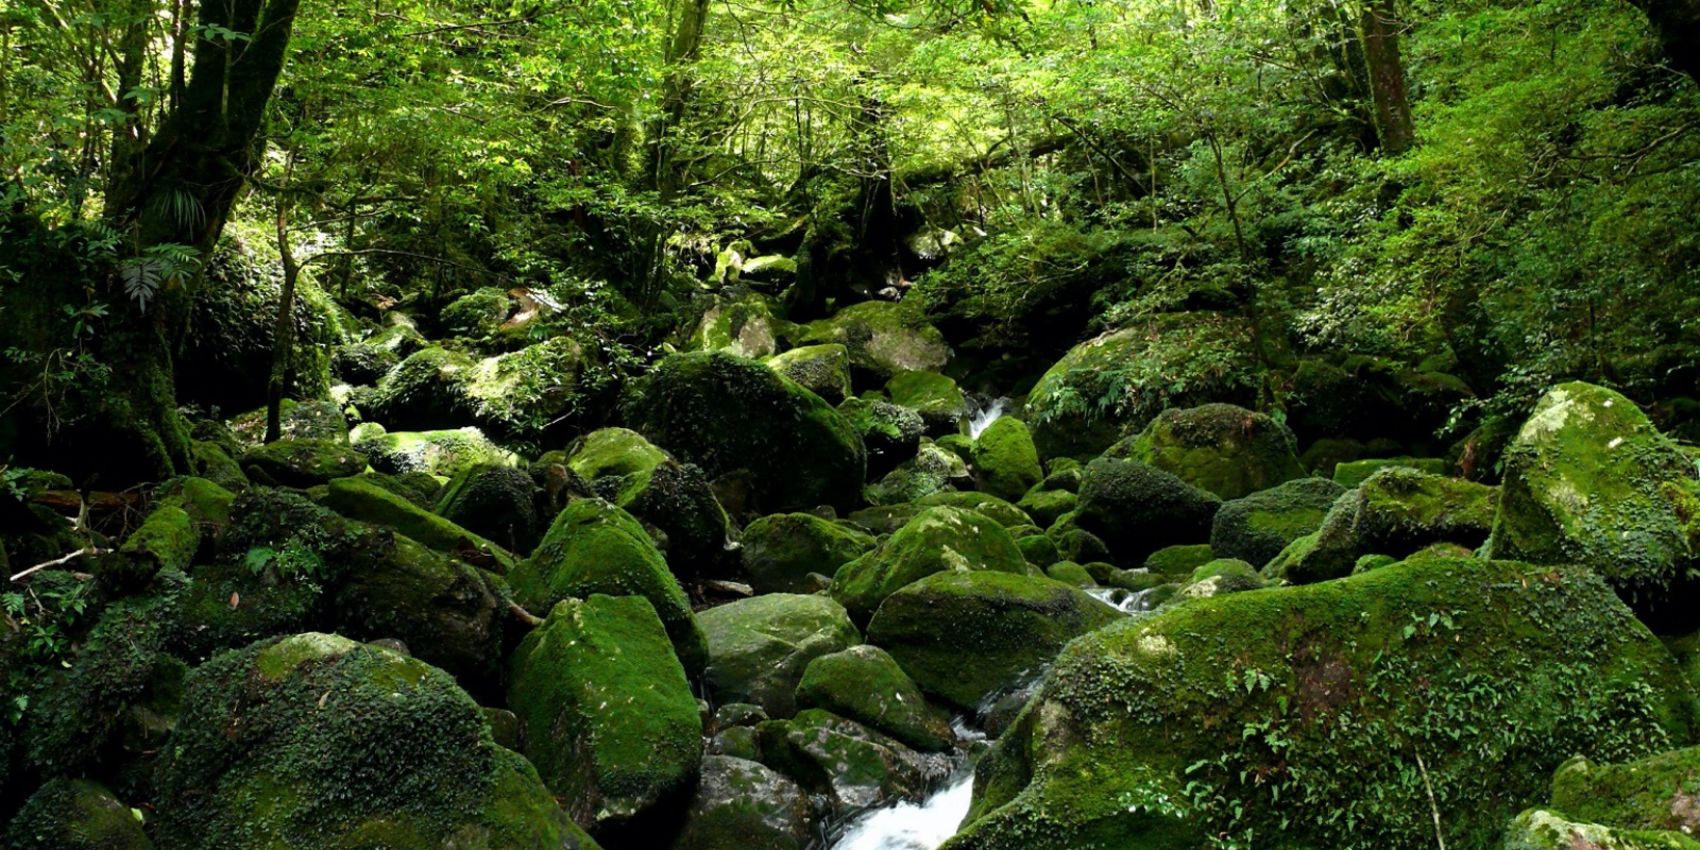 Yakushima - The Mystical Island